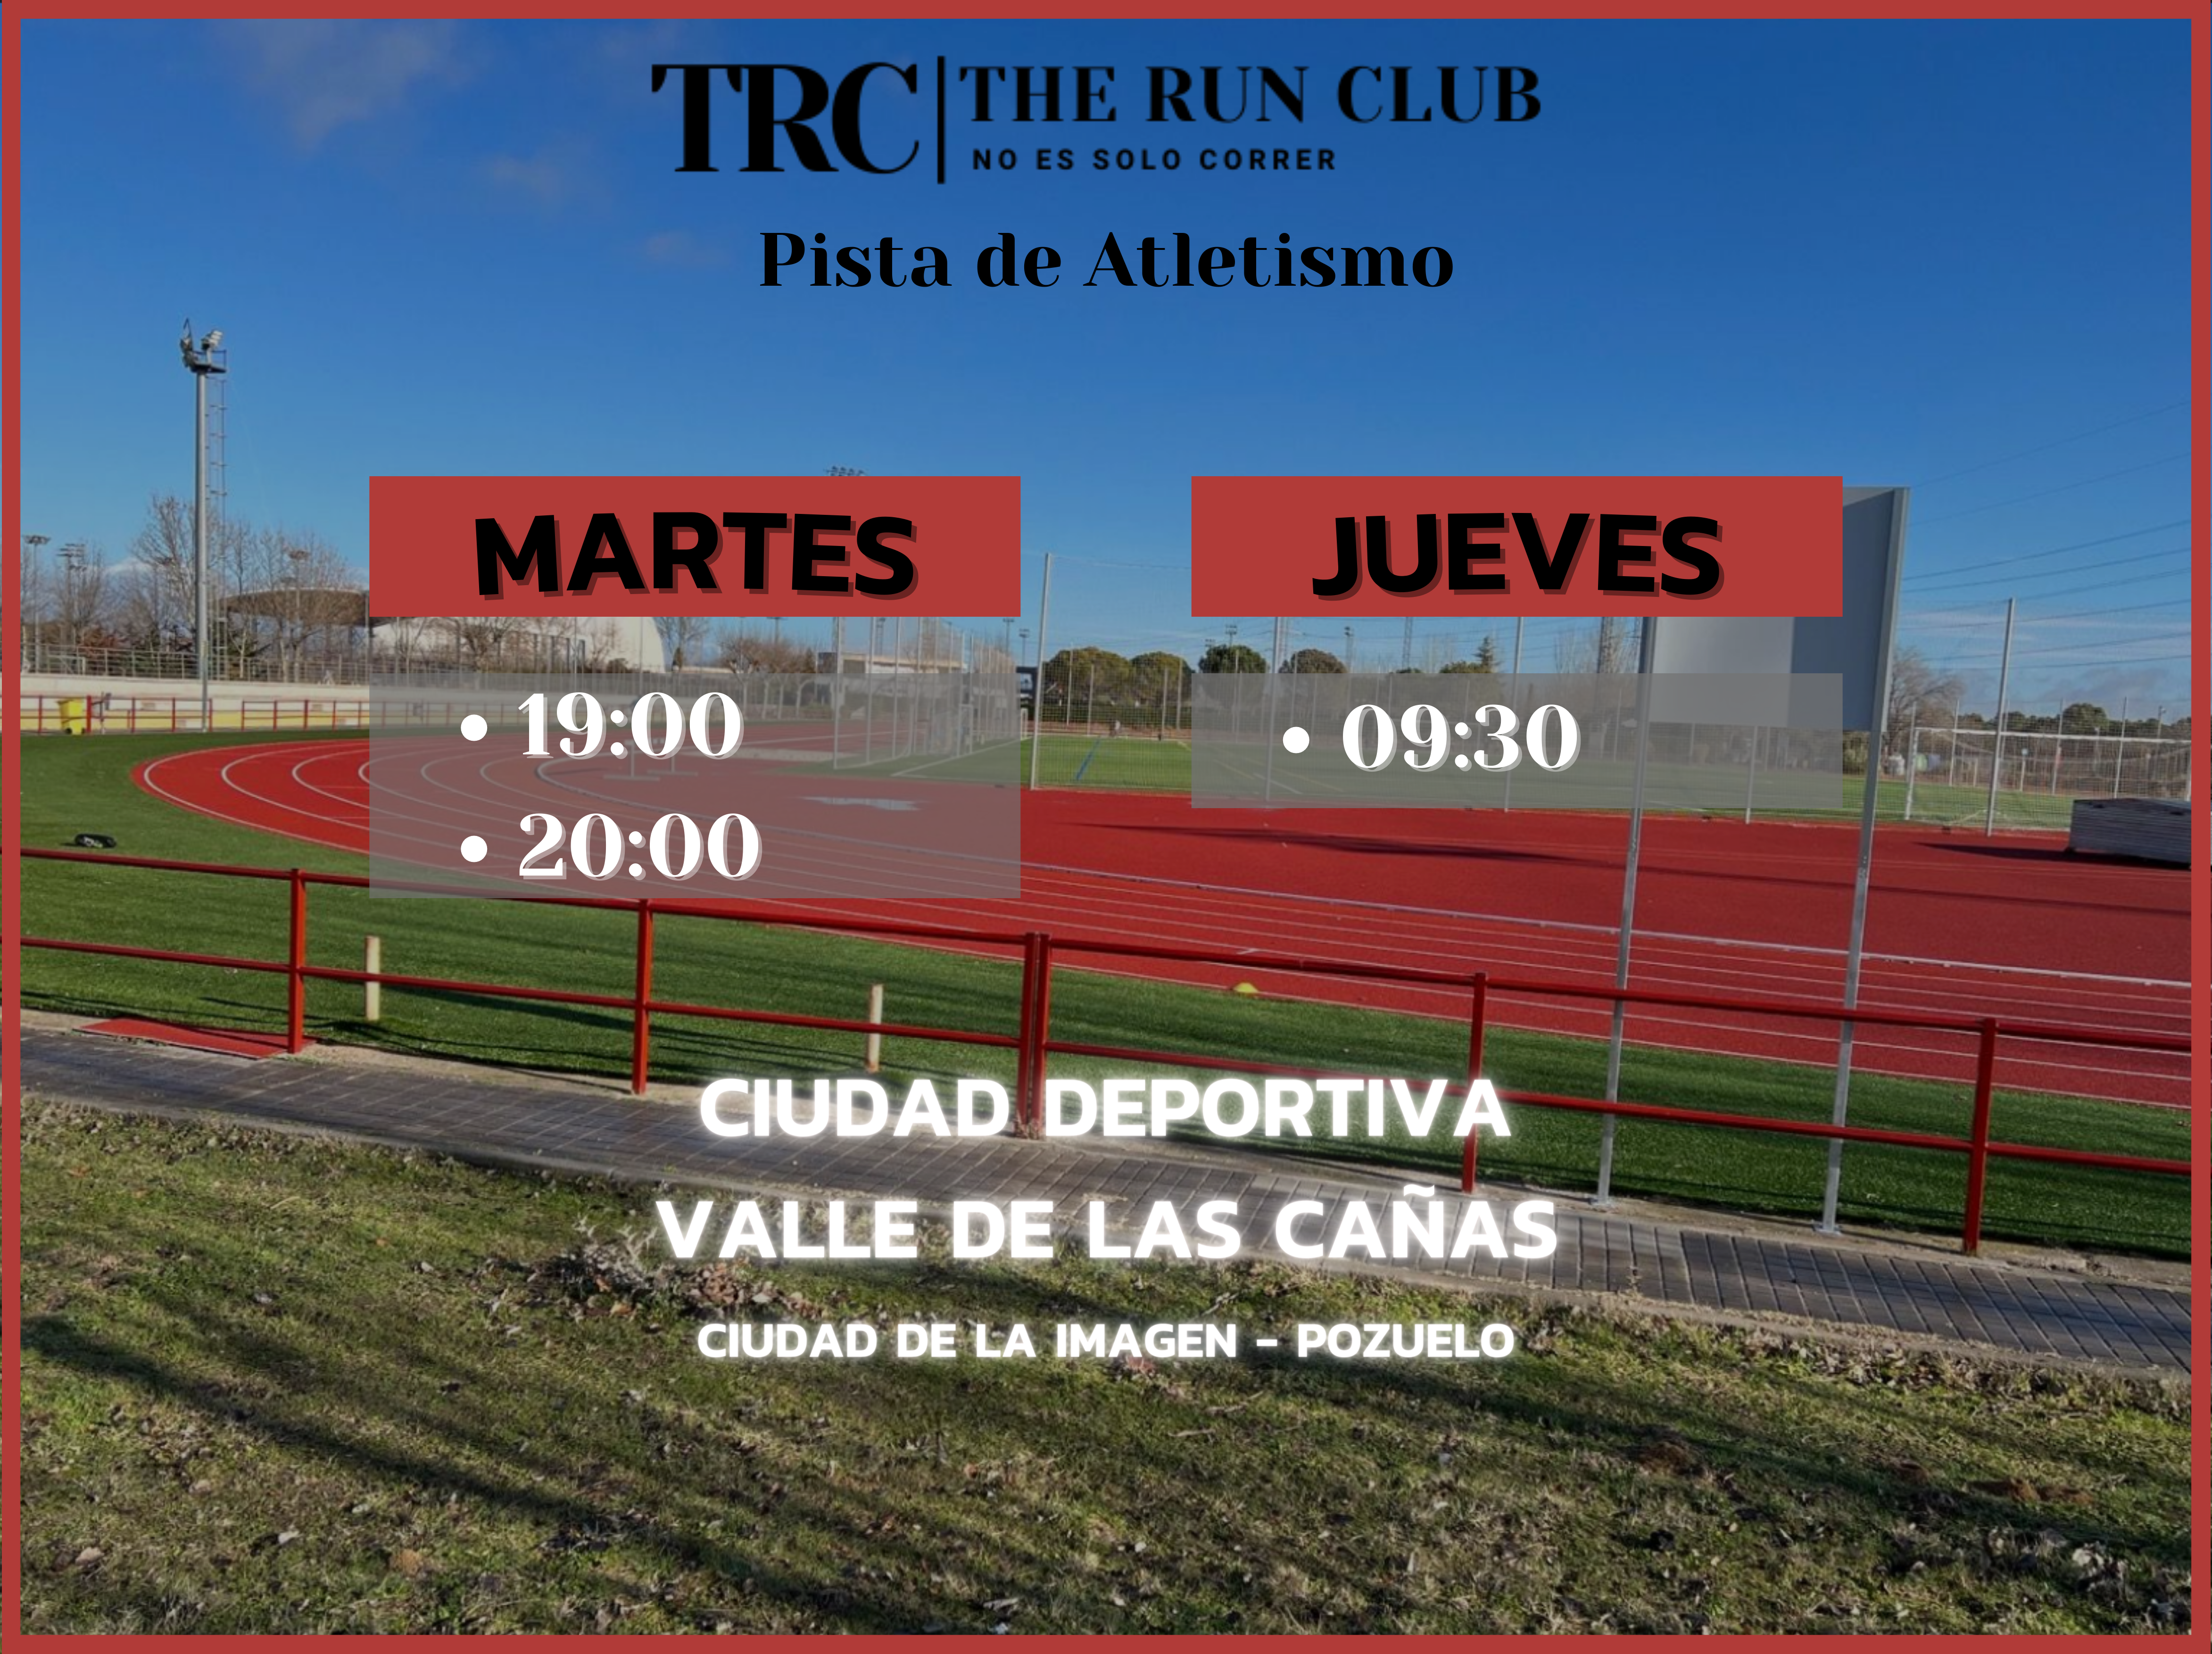 HORARIOS - Club de Atletismo en Madrid - TRC The Run Club - curva 400 metros Valle de las cañas Pozuelo